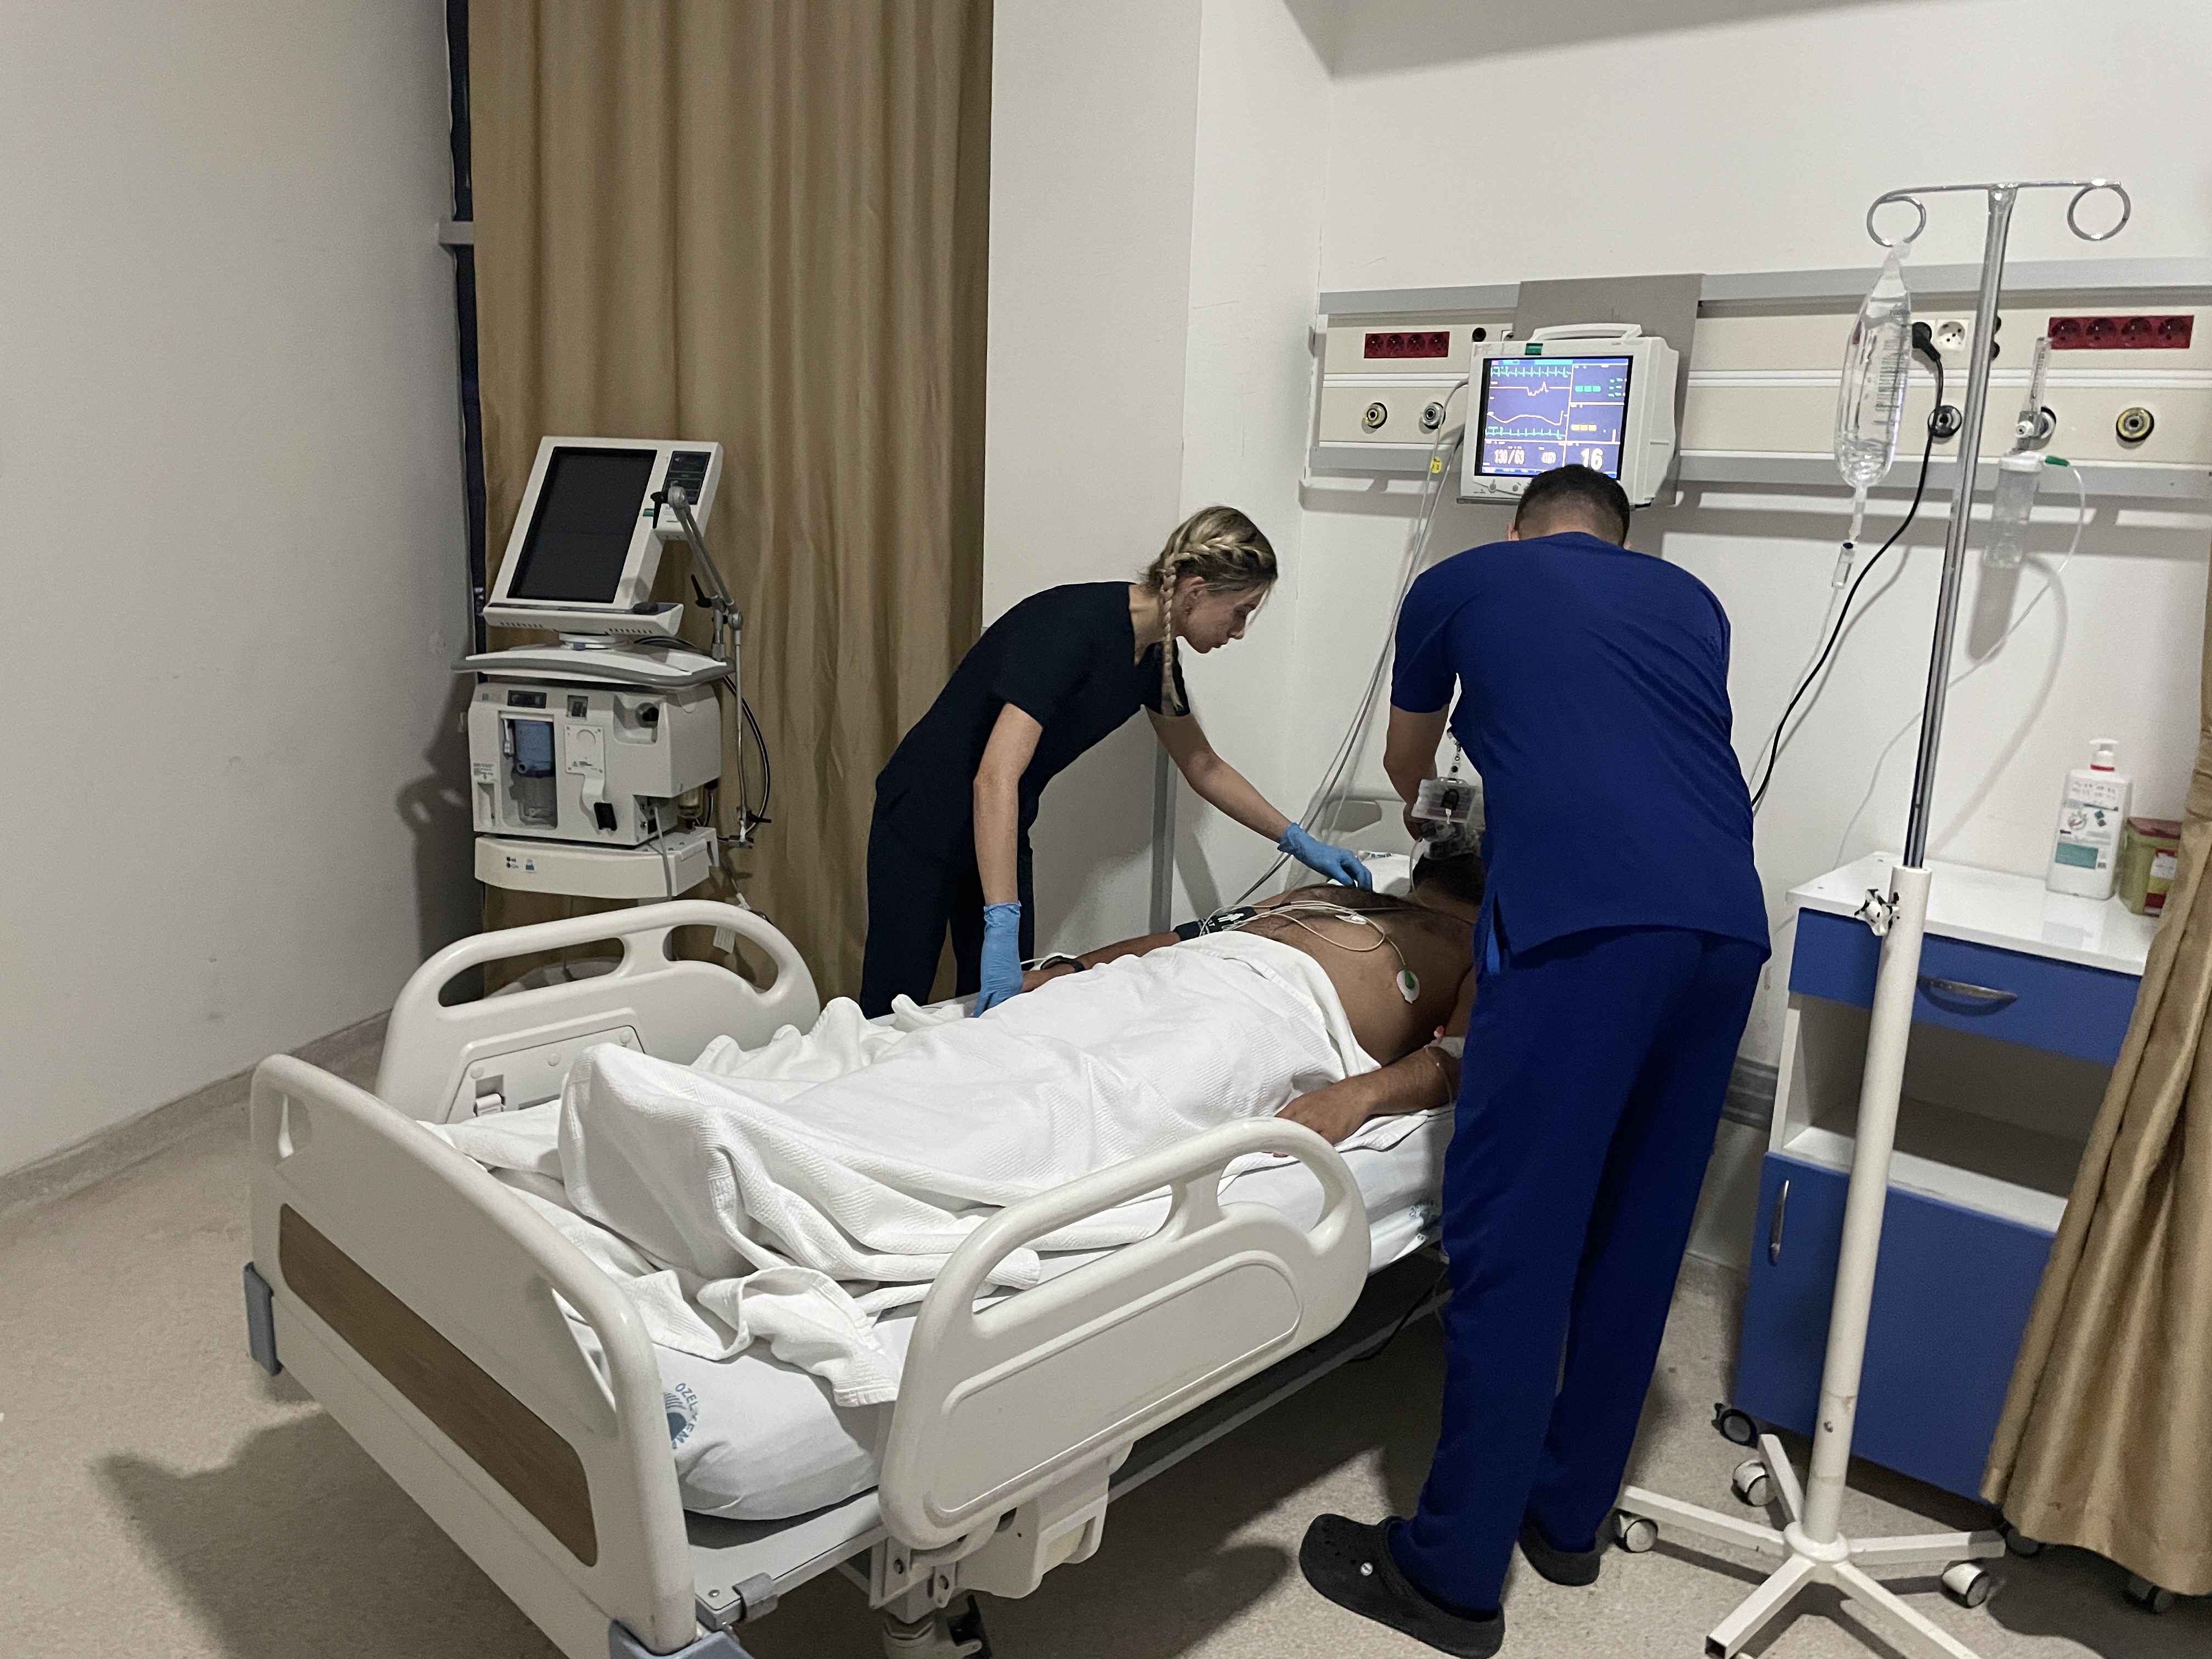 Gaziantep’te hasta yakınlarınca darbedilen doktor yoğun bakıma alındı